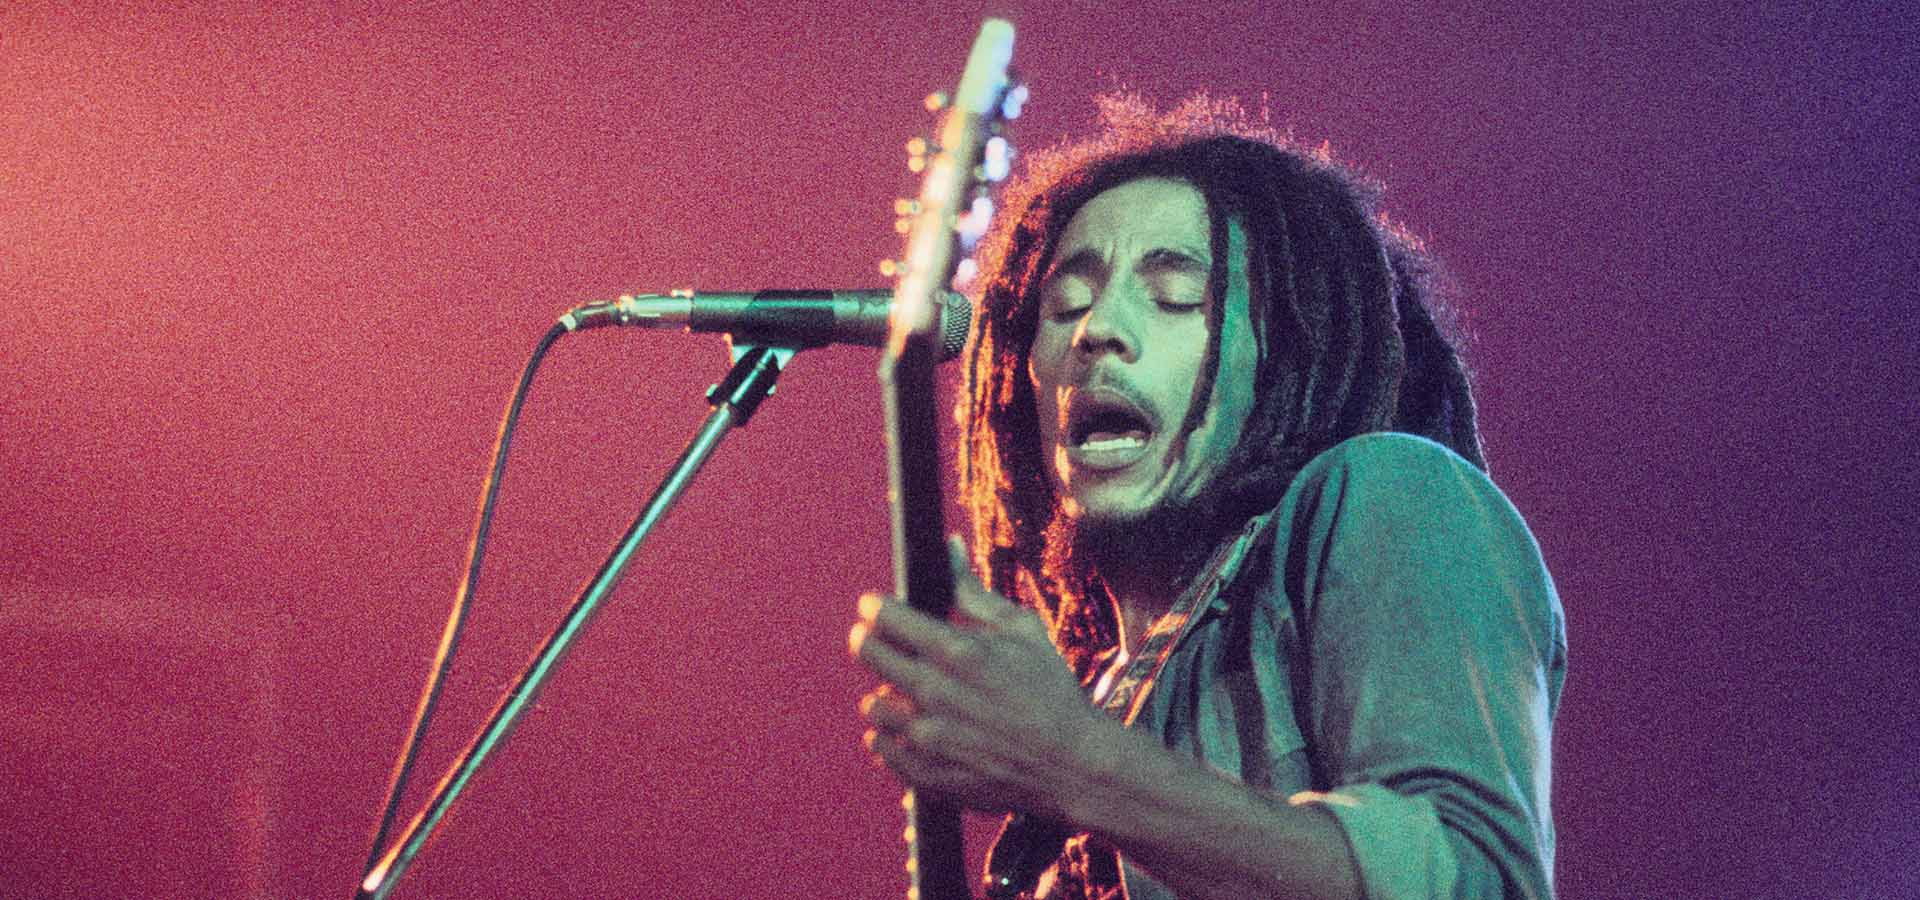 Bob Marley, La Haye (Voorburg), Pays-Bas 1976 den haag, Pays-Bas - 1976, (Photo Gijsbert Hanekroot) *** Légende locale *** Bob Marley and the Wailers